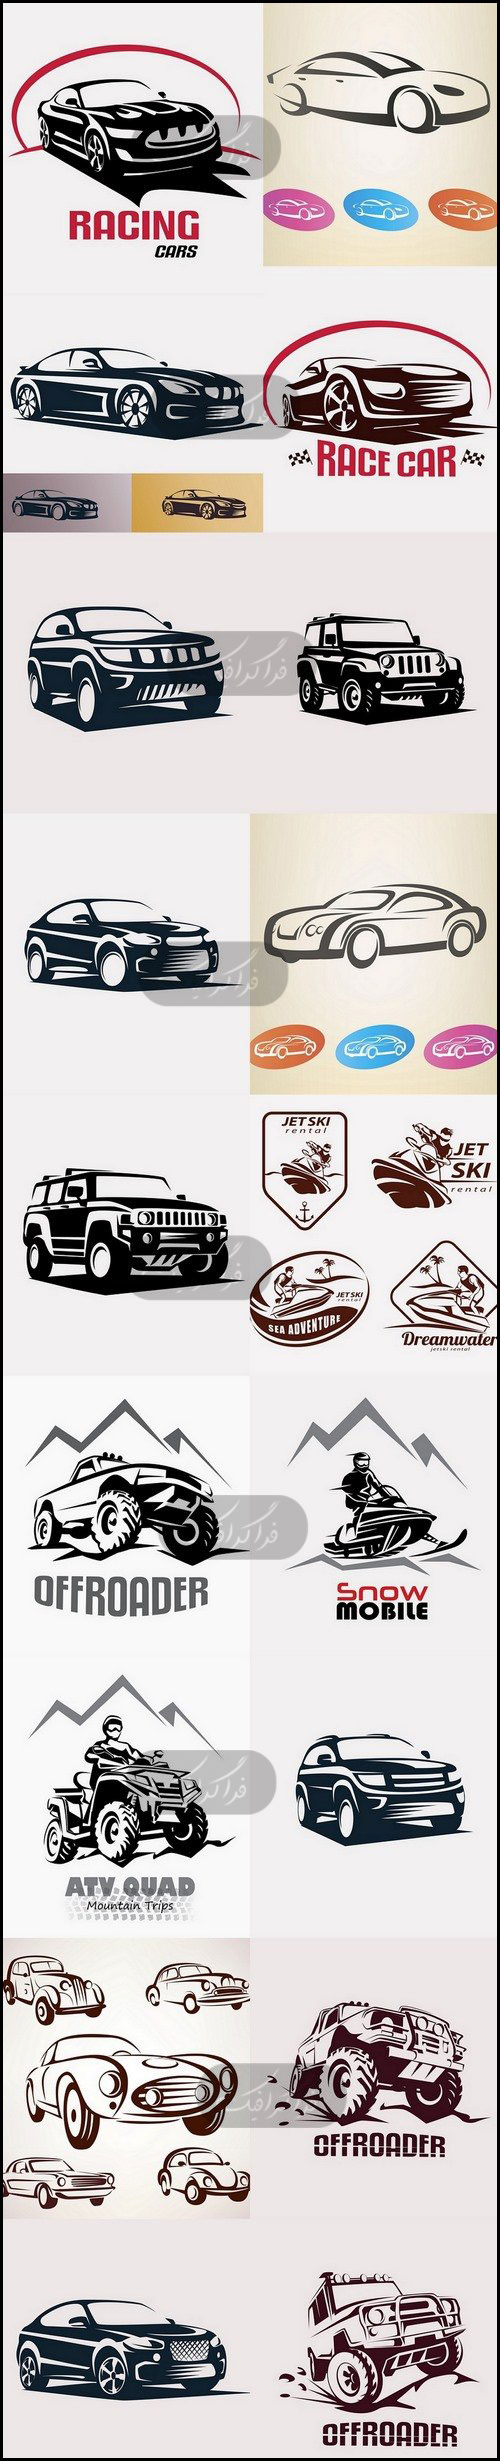 دانلود لوگو های اتومبیل Cars Logos - شماره 4